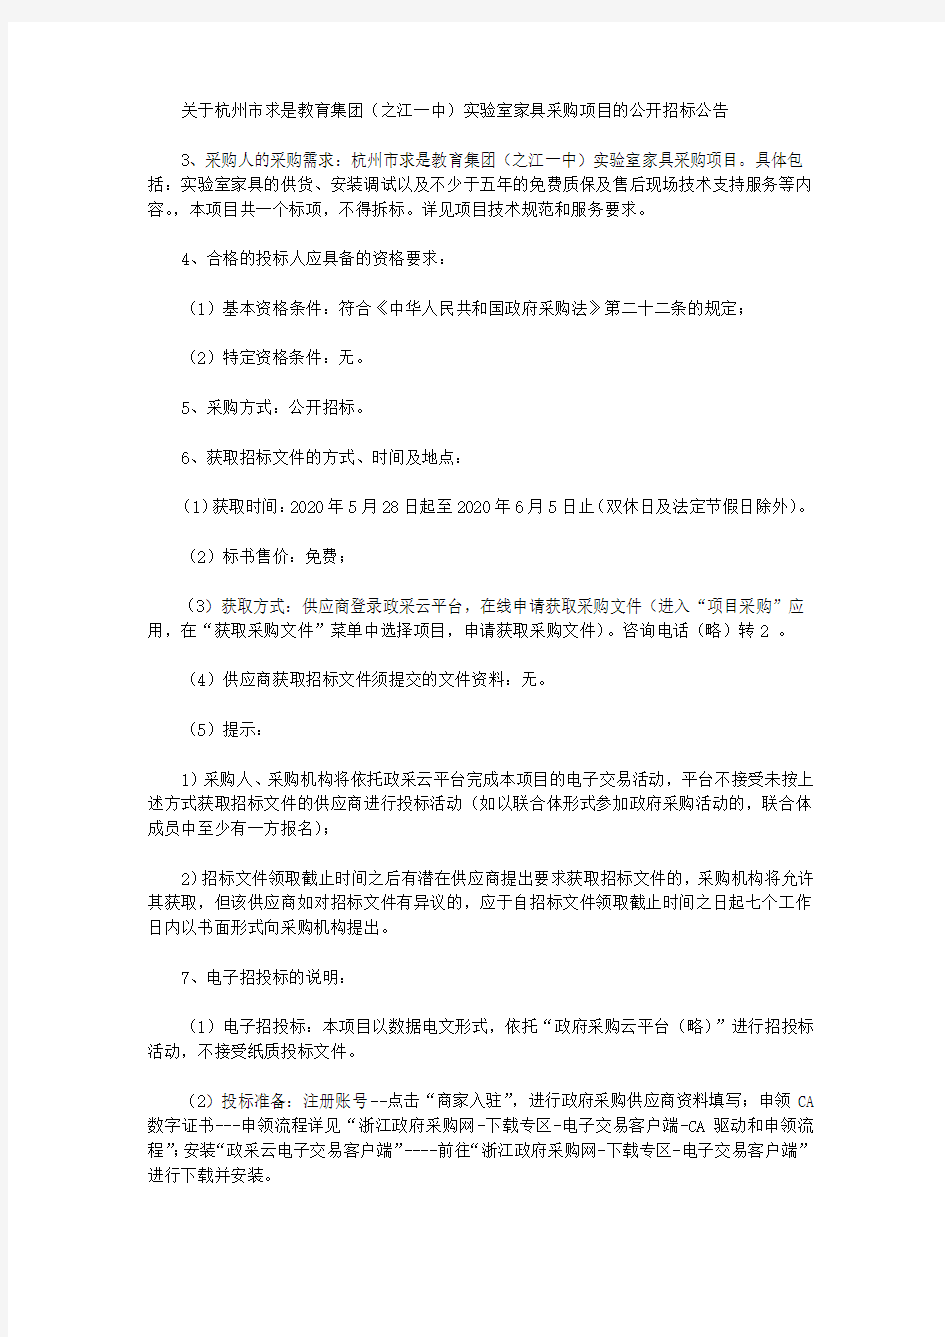 关于杭州市求是教育集团(之江一中)实验室家具采购项目的公开招标公告